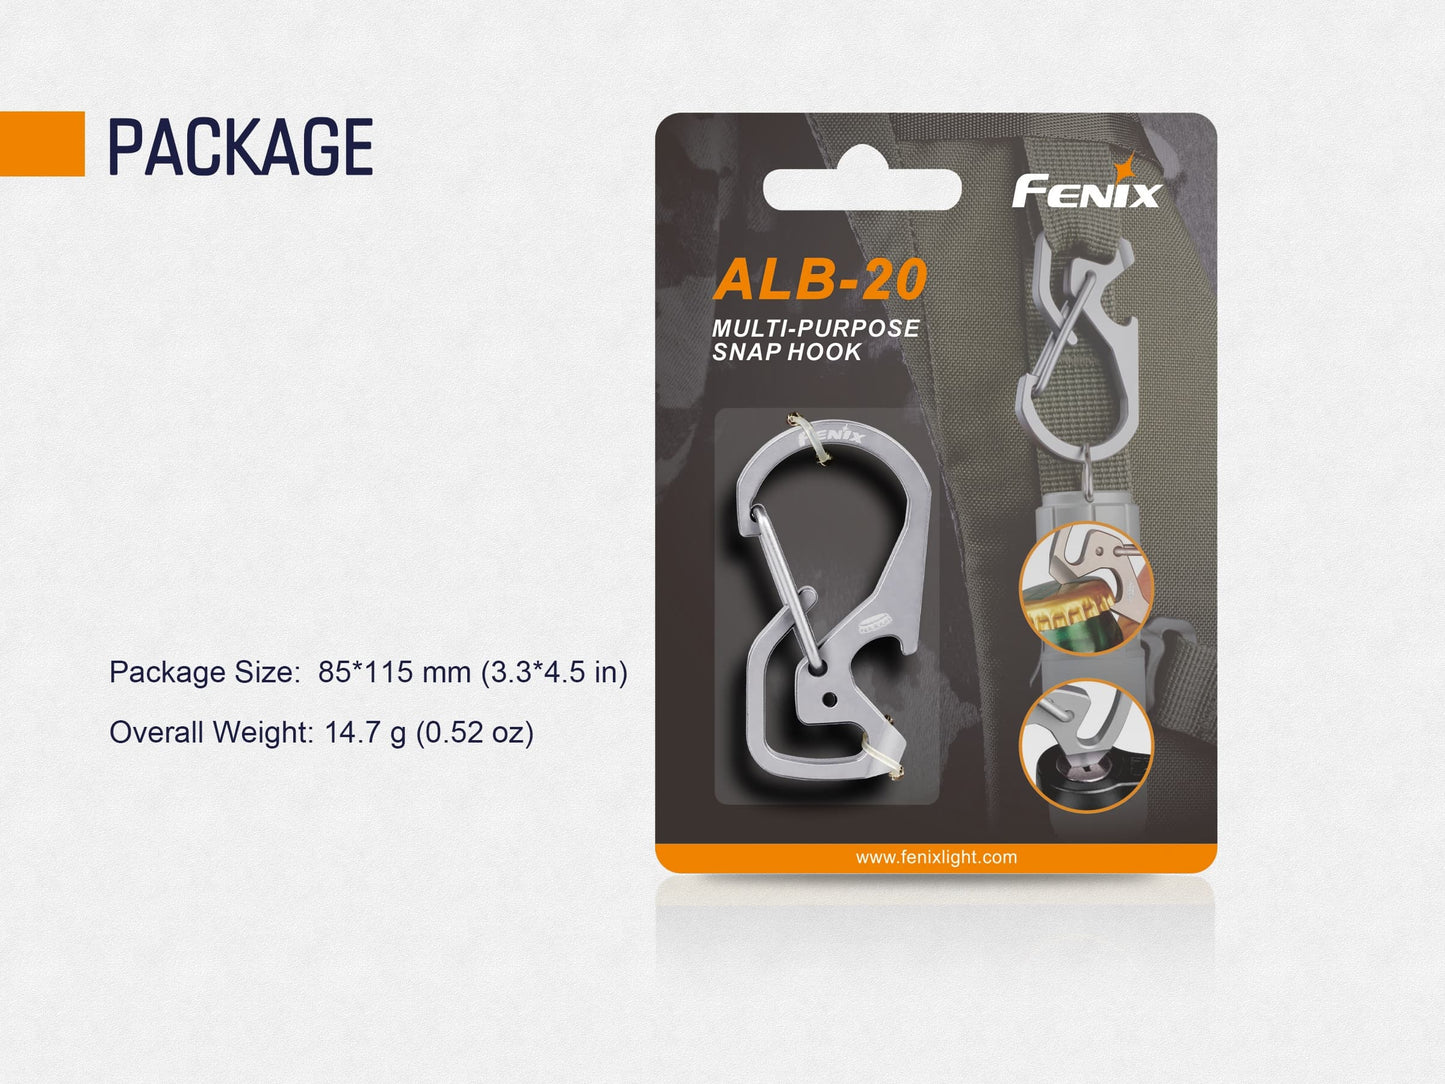 Fenix ALB-20 Multi-Purpose Snap Hook - TC4 Titanium Alloy